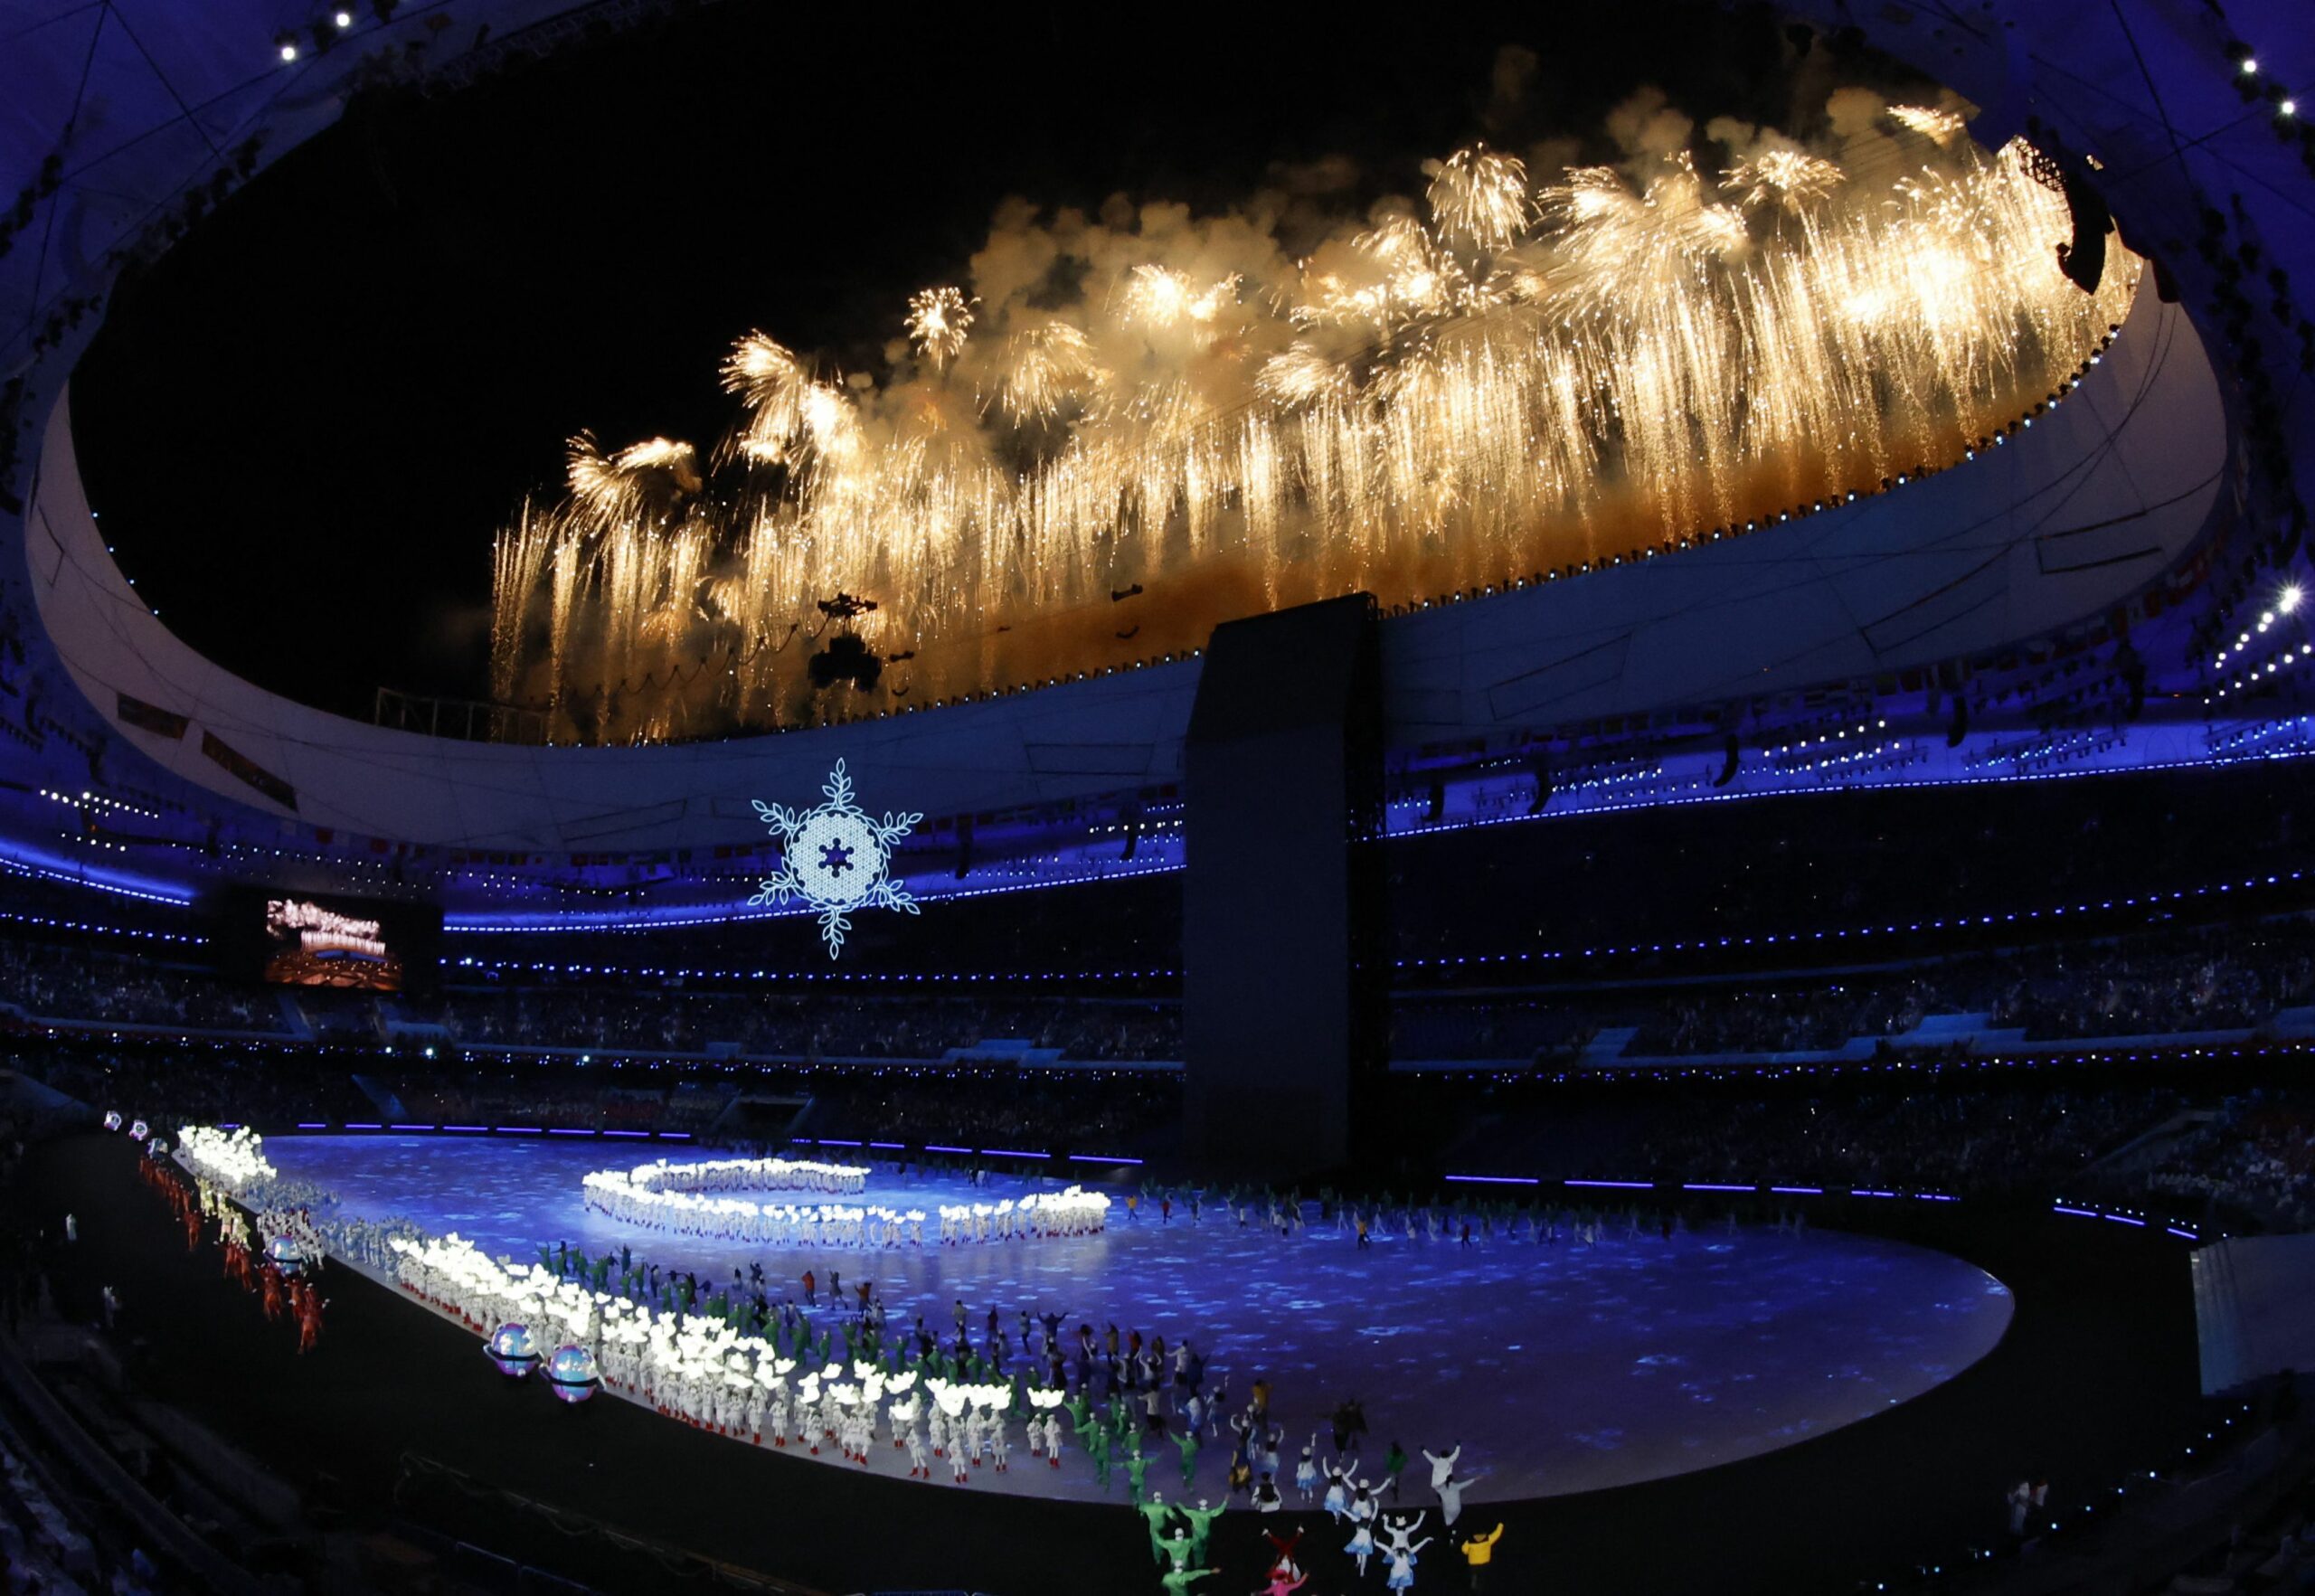 Фейерверк на церемонии открытия Зимних Олимпийских игр в Пекине. 4 февраля 2022 года. Стадион “Птичье гнездо”. Фото Jonathan Ernst/REUTERS/Scanpix/LETA